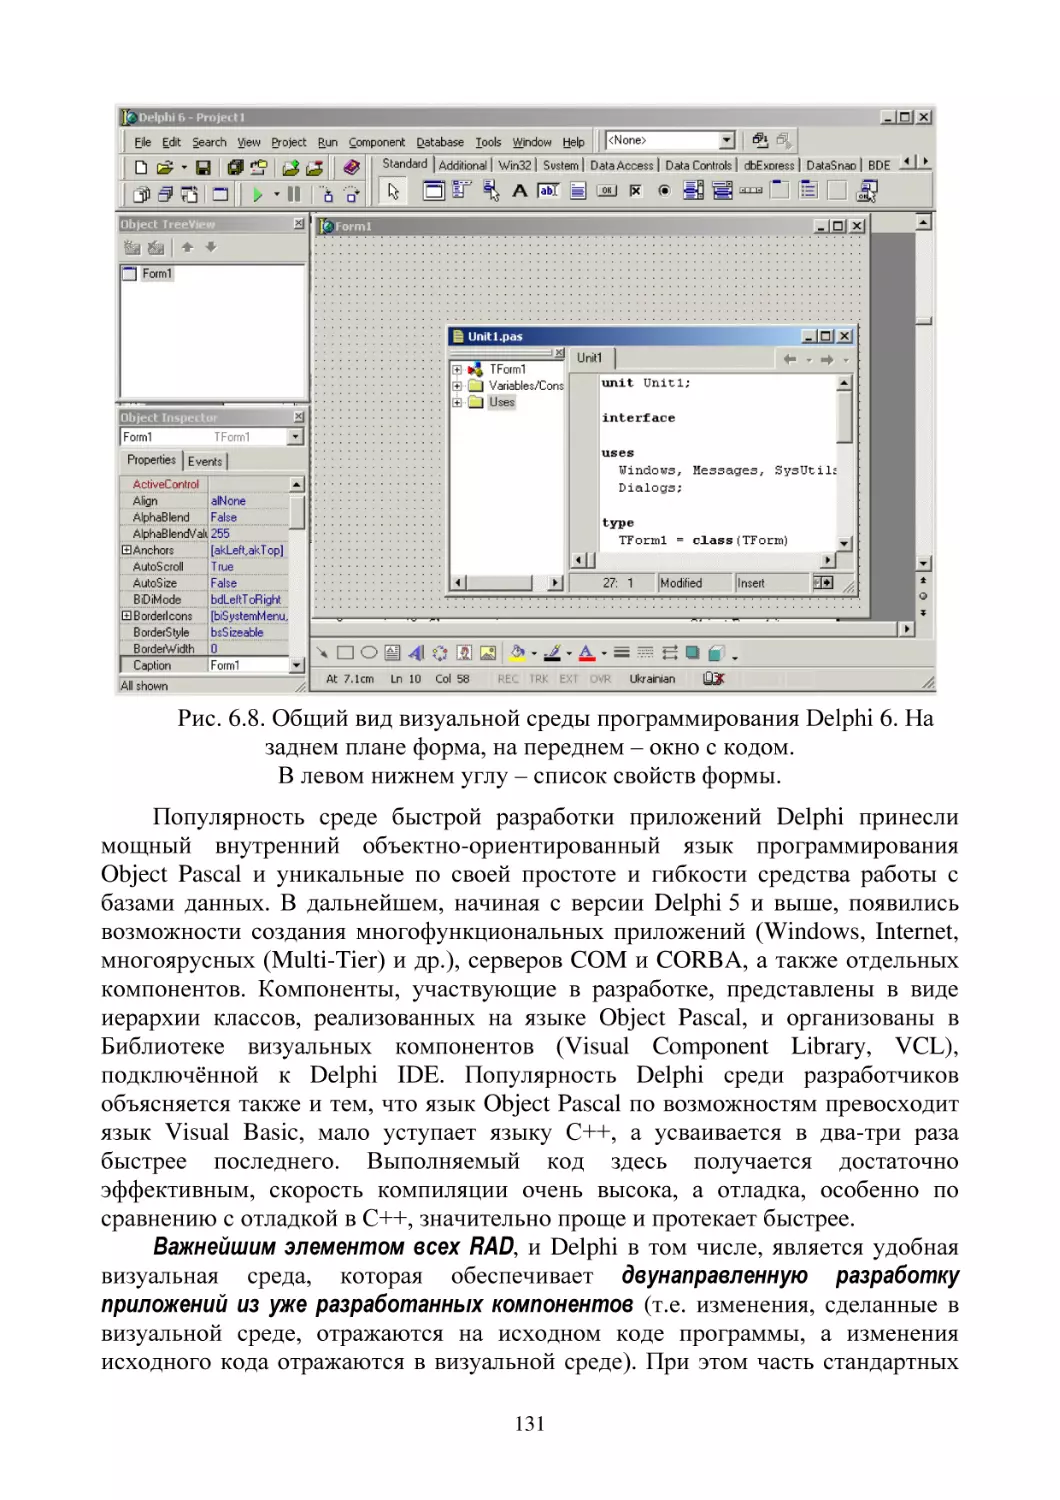 Рис. 6.8. Общий вид визуальной среды программирования Delphi 6. На заднем плане форма, на переднем – окно с кодом.